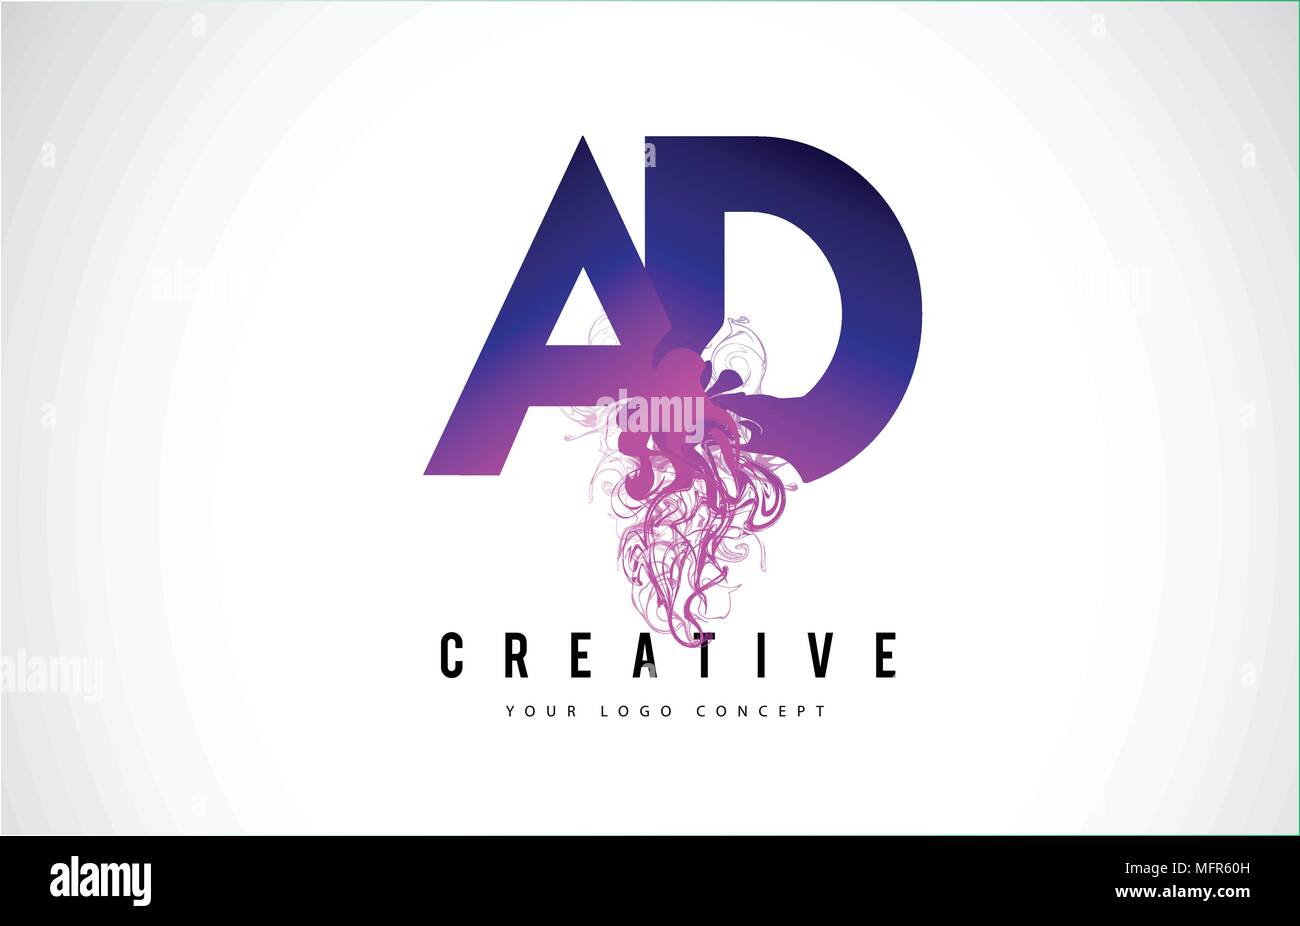 Annonce A D Purple Lettre Logo Design créatif avec effet liquide Vector Illustration. Illustration de Vecteur